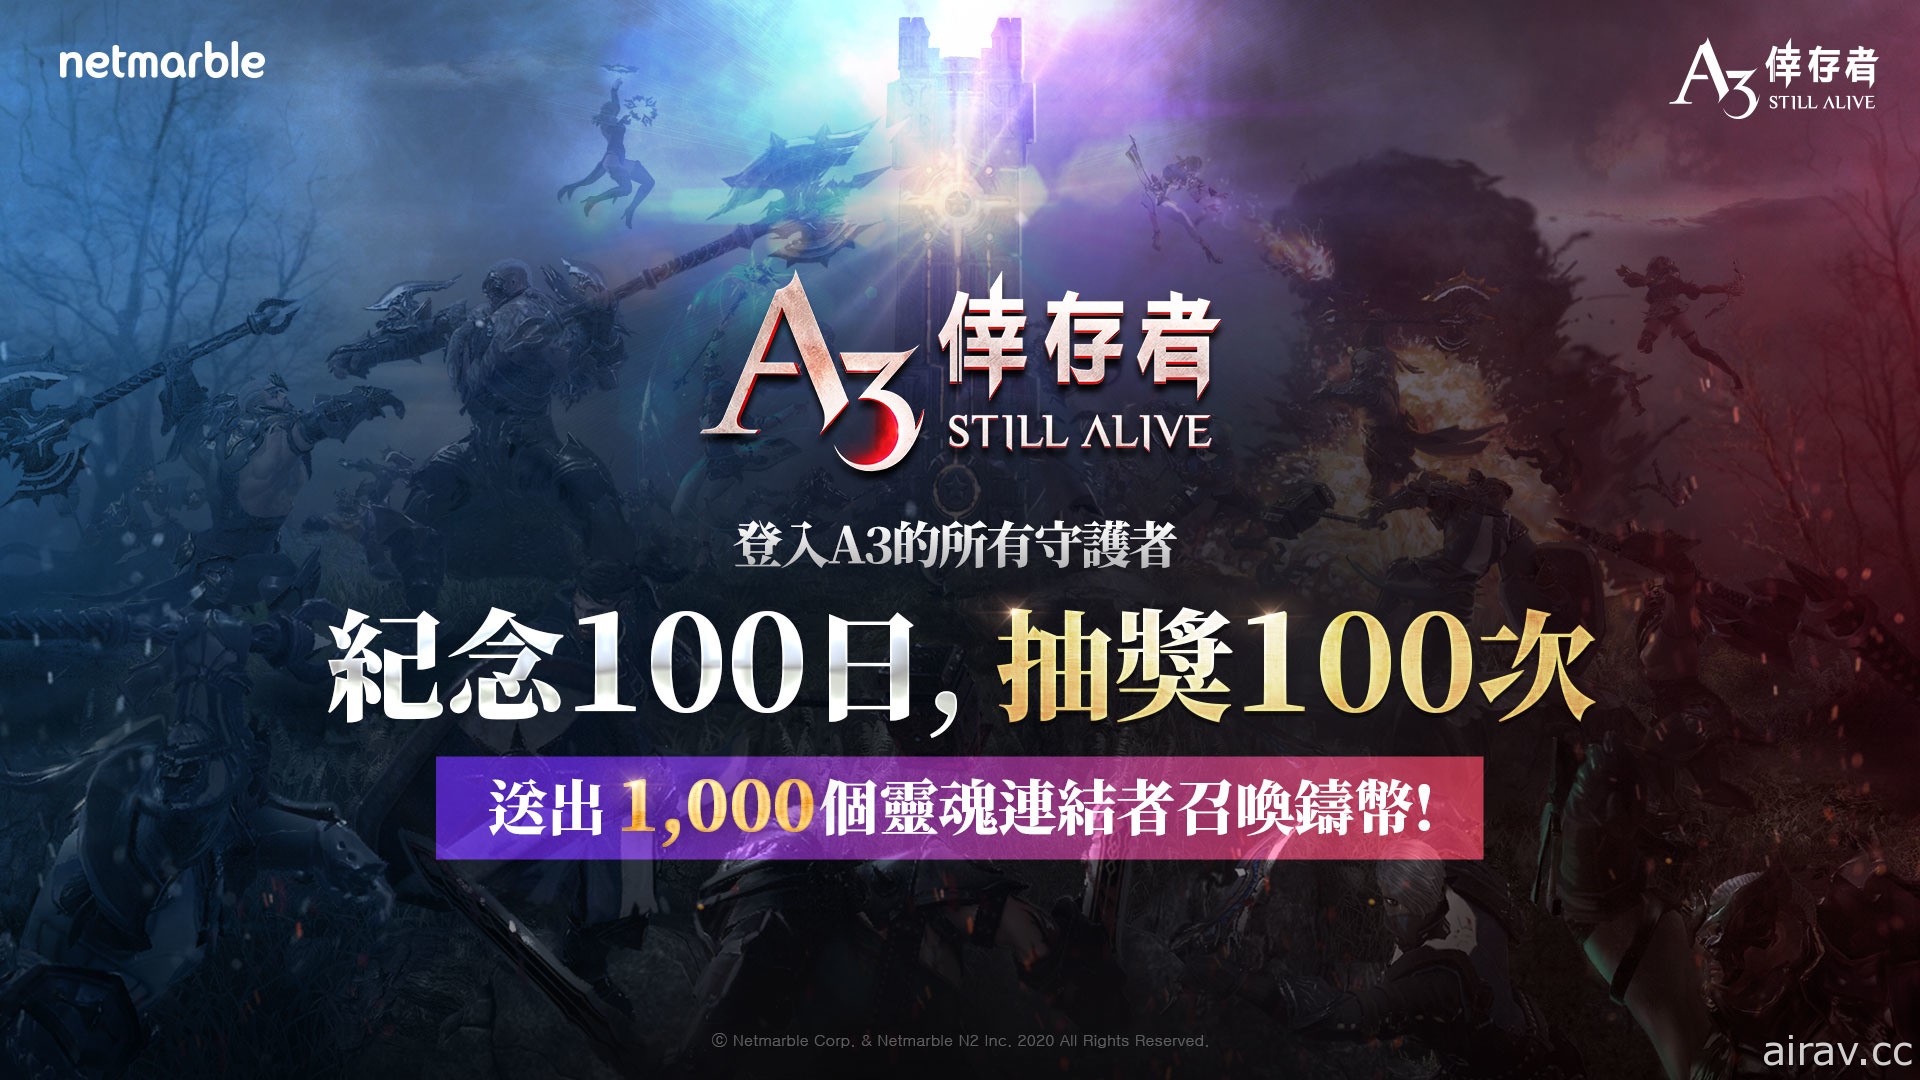 《A3: STILL ALIVE 幸存者》推出开服100 天活动 可获得 1,000 召唤铸币